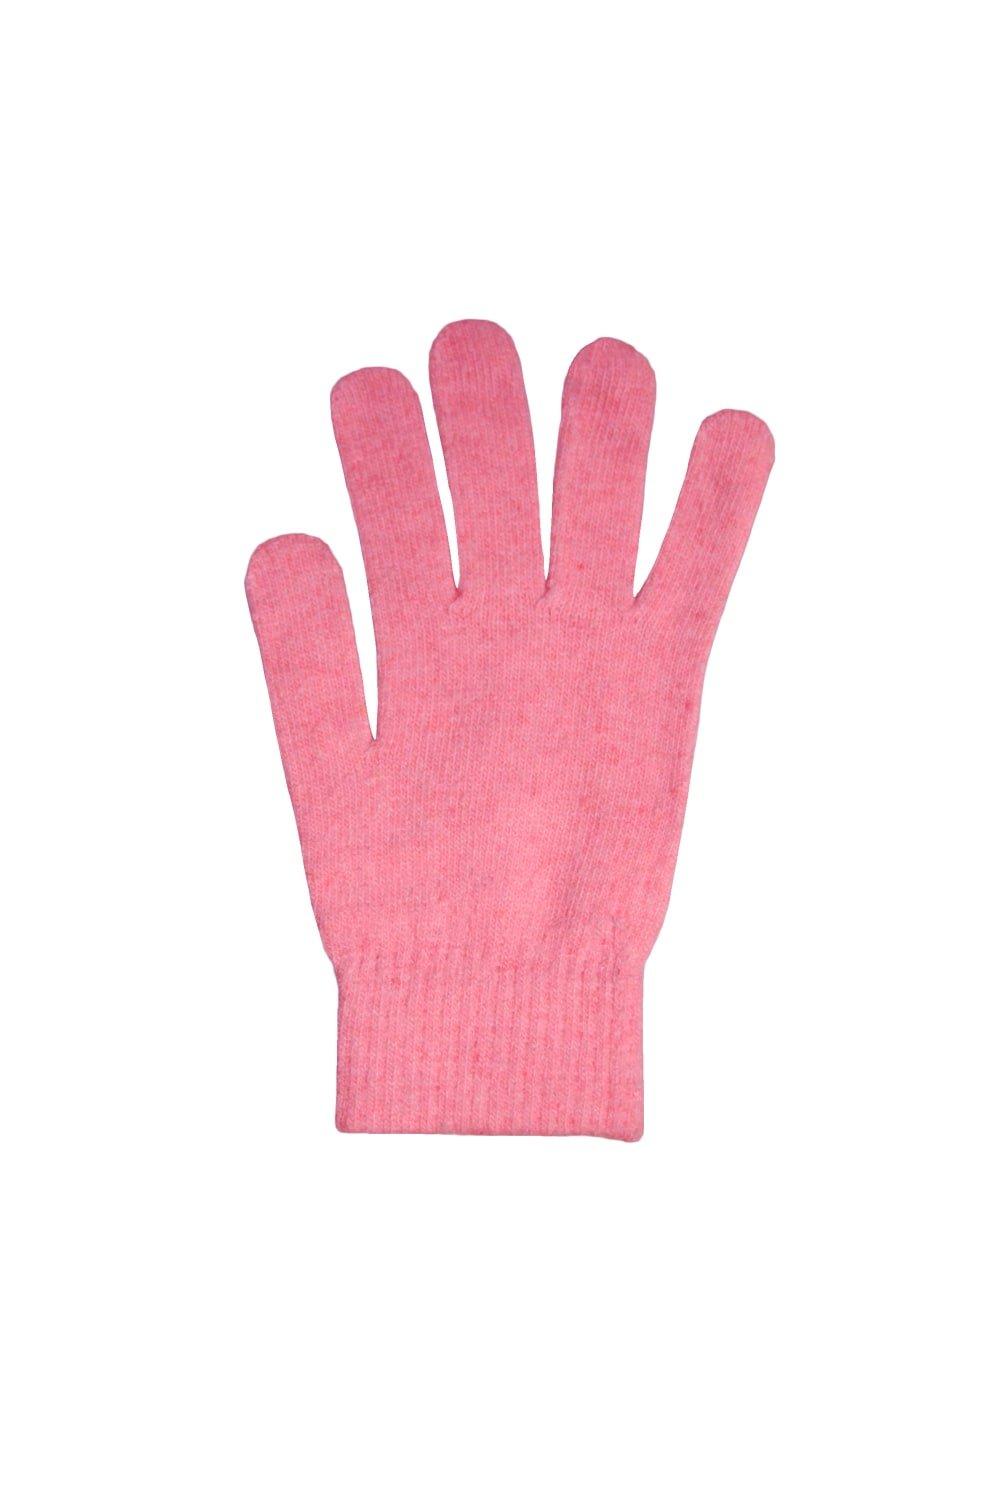 Зимние волшебные перчатки из шерсти Universal Textiles, розовый распродажа термовязаные зимние перчатки universal textiles серый